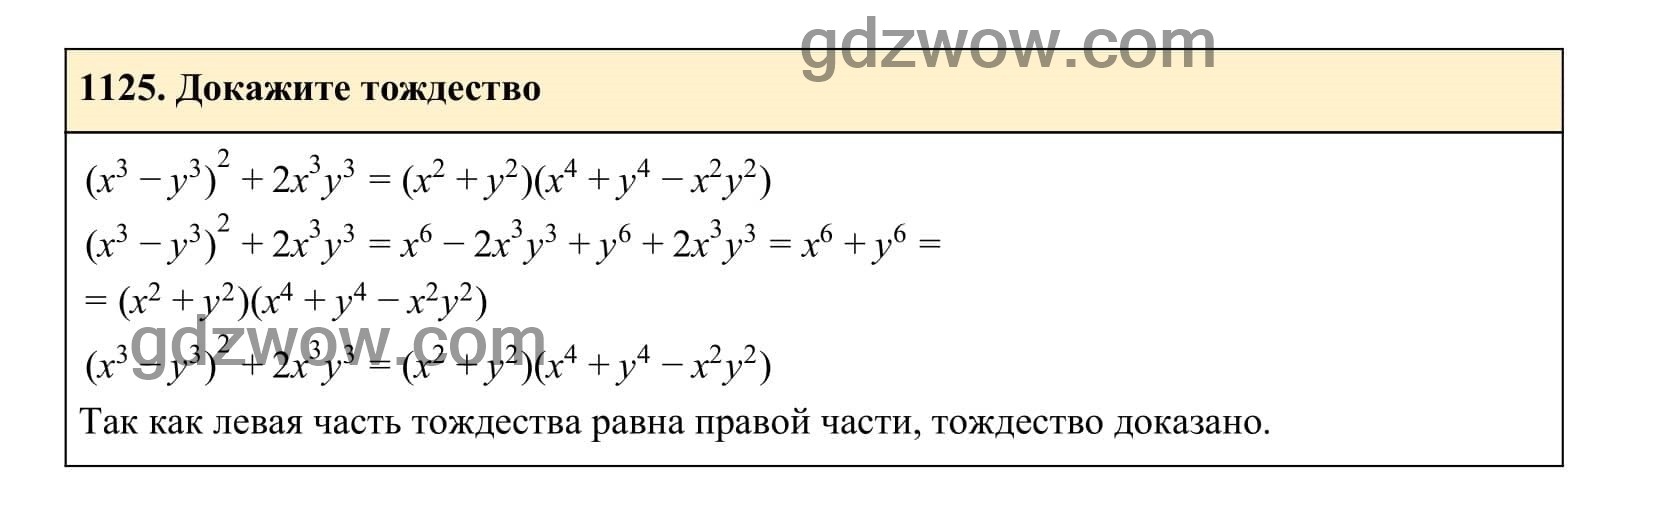 Упражнение 1125 - ГДЗ по Алгебре 7 класс Учебник Макарычев (решебник) - GDZwow